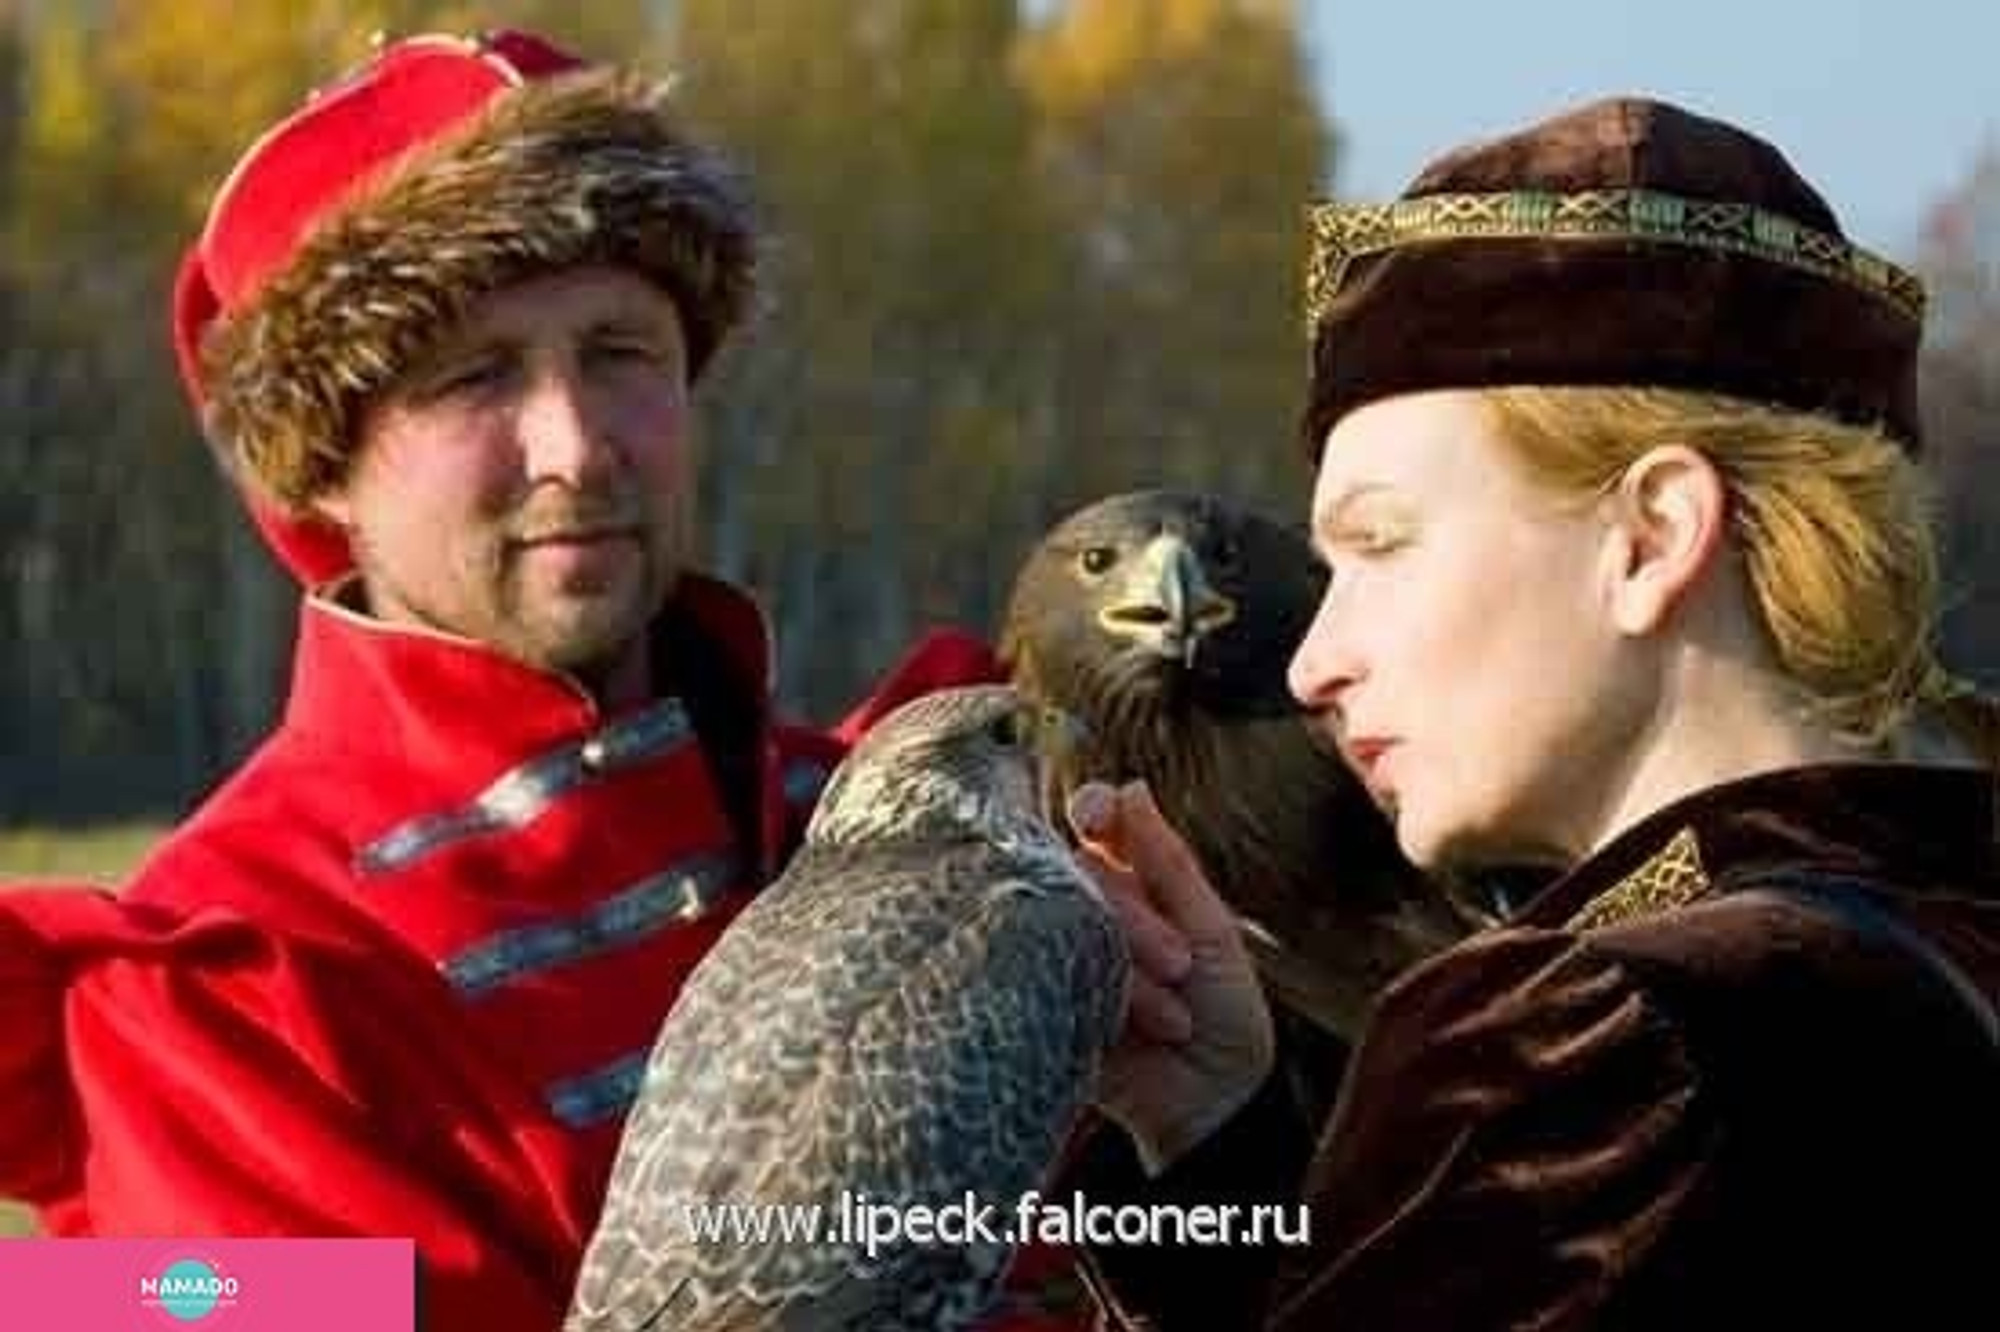 "Галичья гора", заповедник, питомник хищных птиц в Липецкой области 